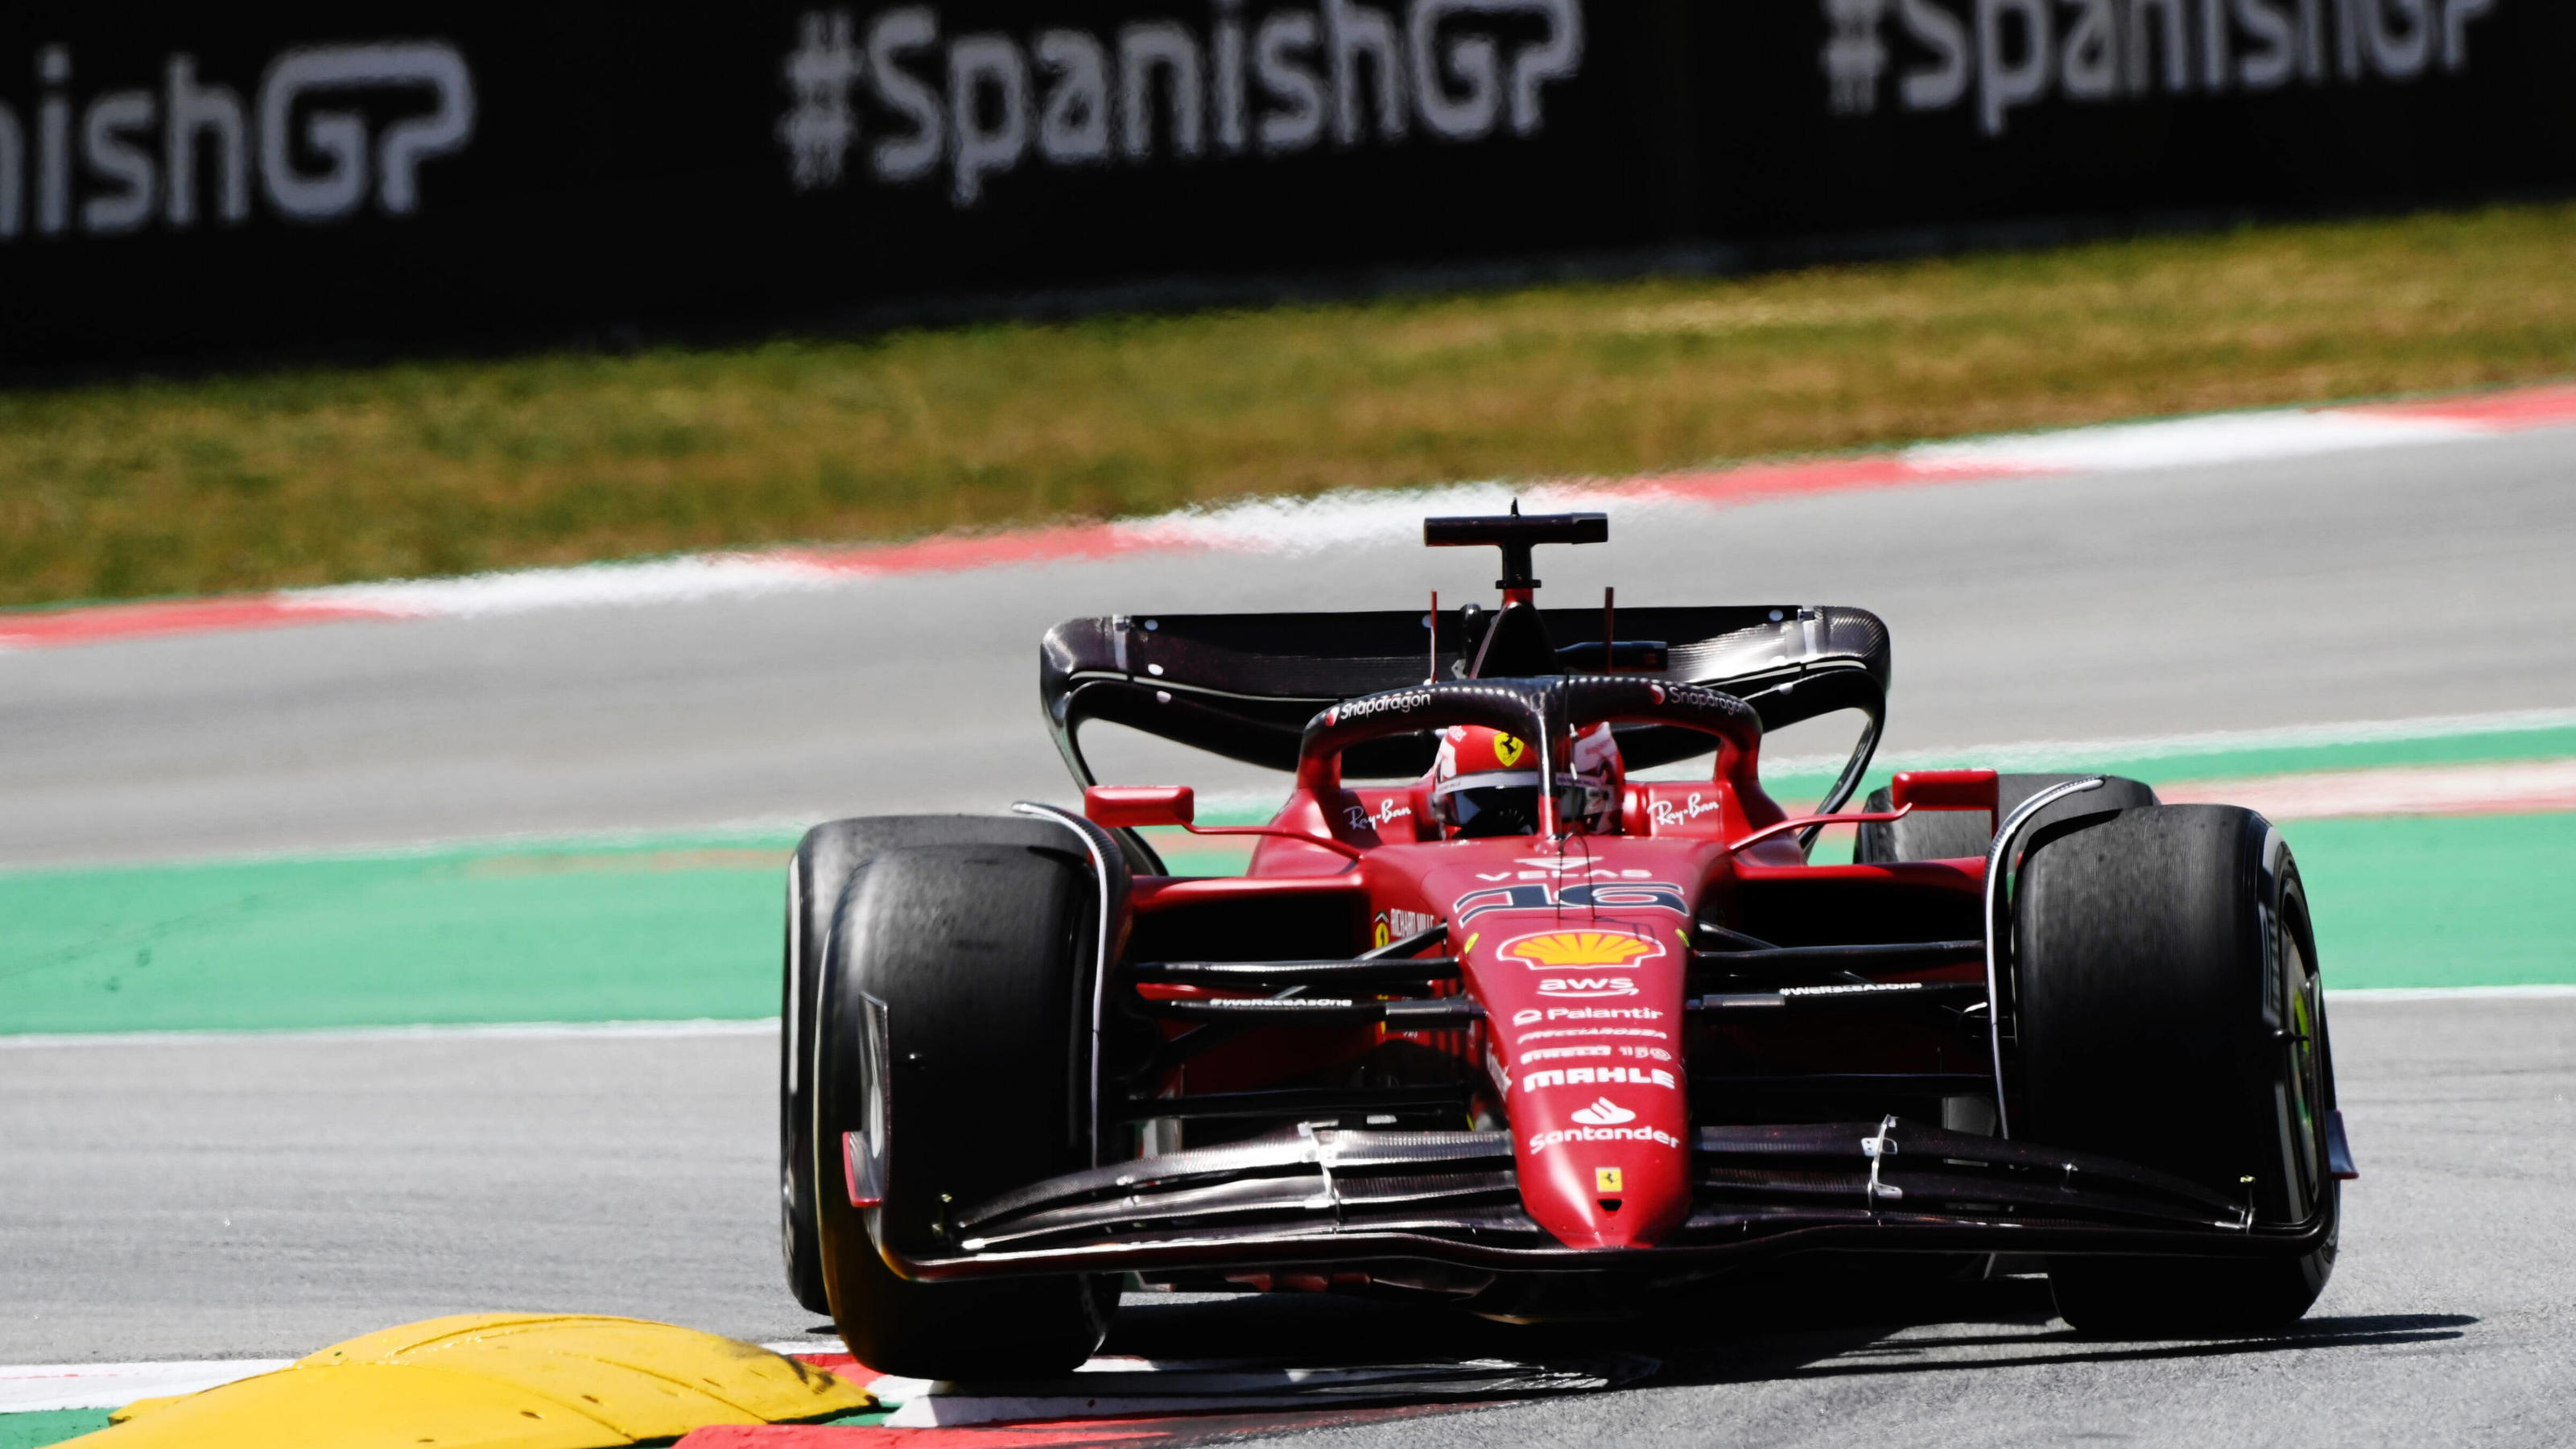 Formel 1 in Spanien im Live-Ticker Wer gewinnt die Quali-Probe?